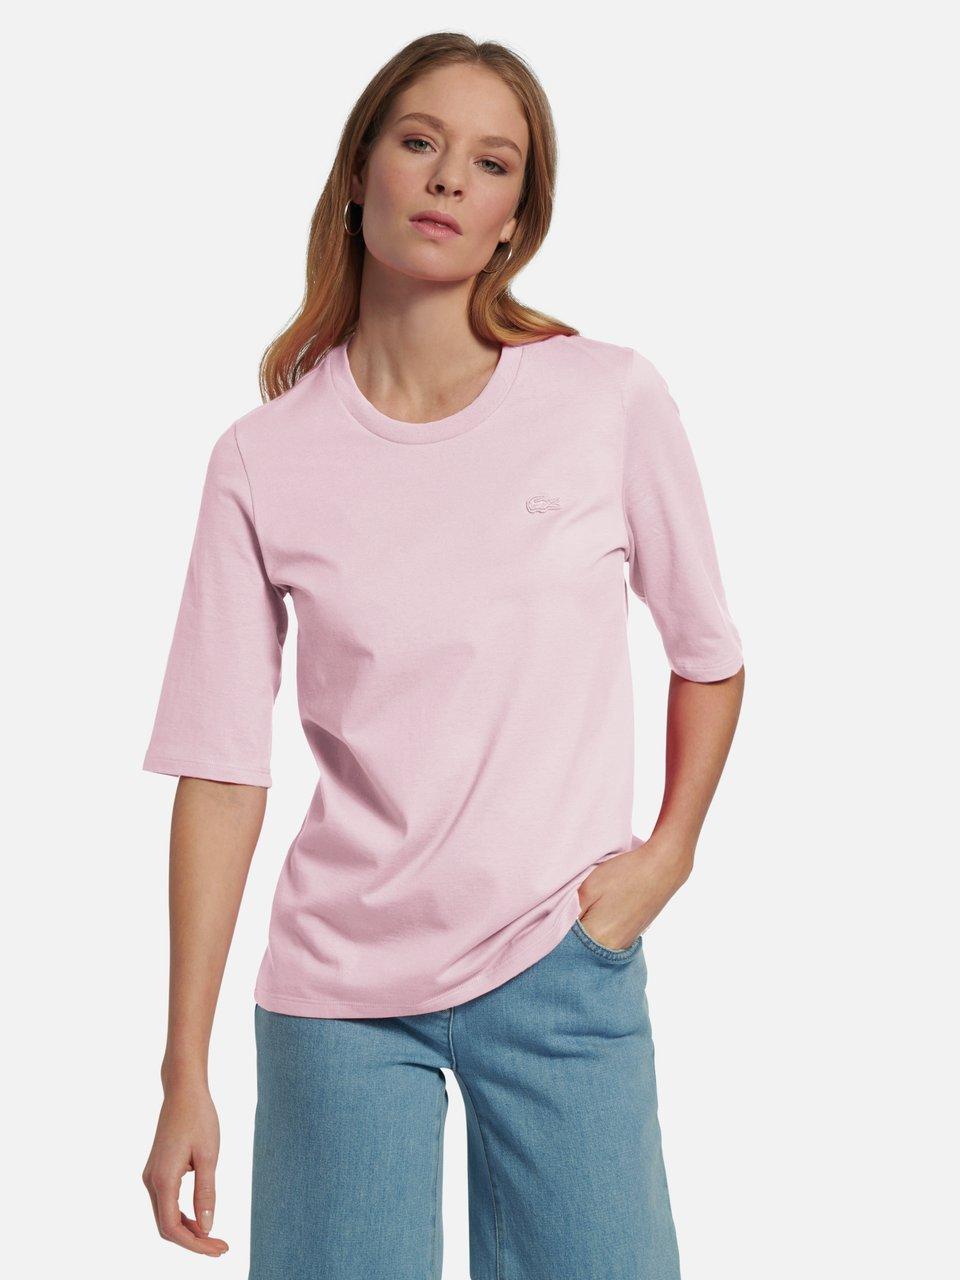 Rosée Damen t-shirts kaufen im Online-Shop Peter Hahn